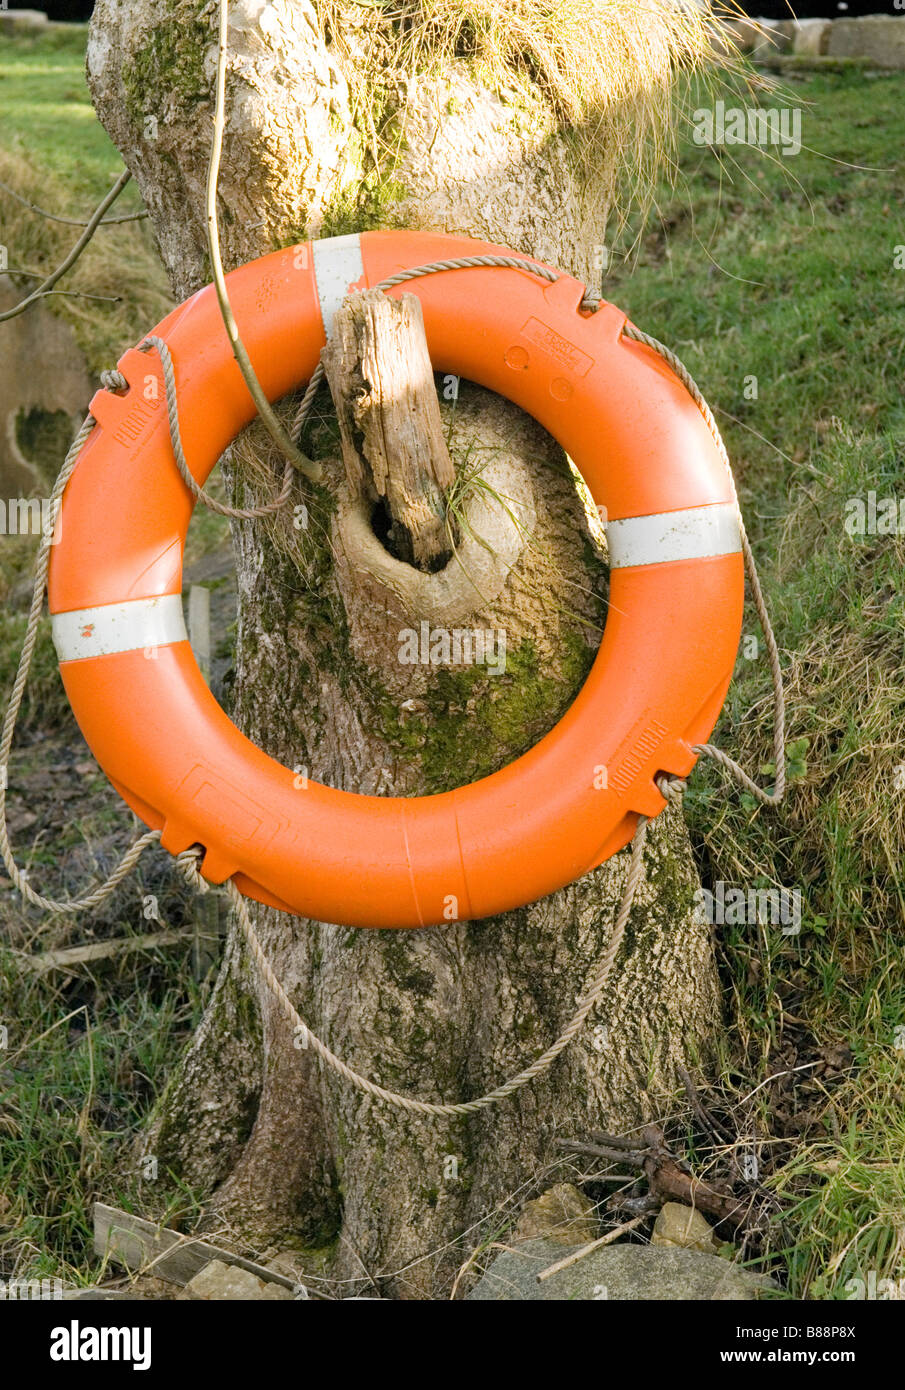 Bouée Orange accroché sur la vieille souche d'arbre,Argyll, Ecosse, Royaume-Uni Banque D'Images